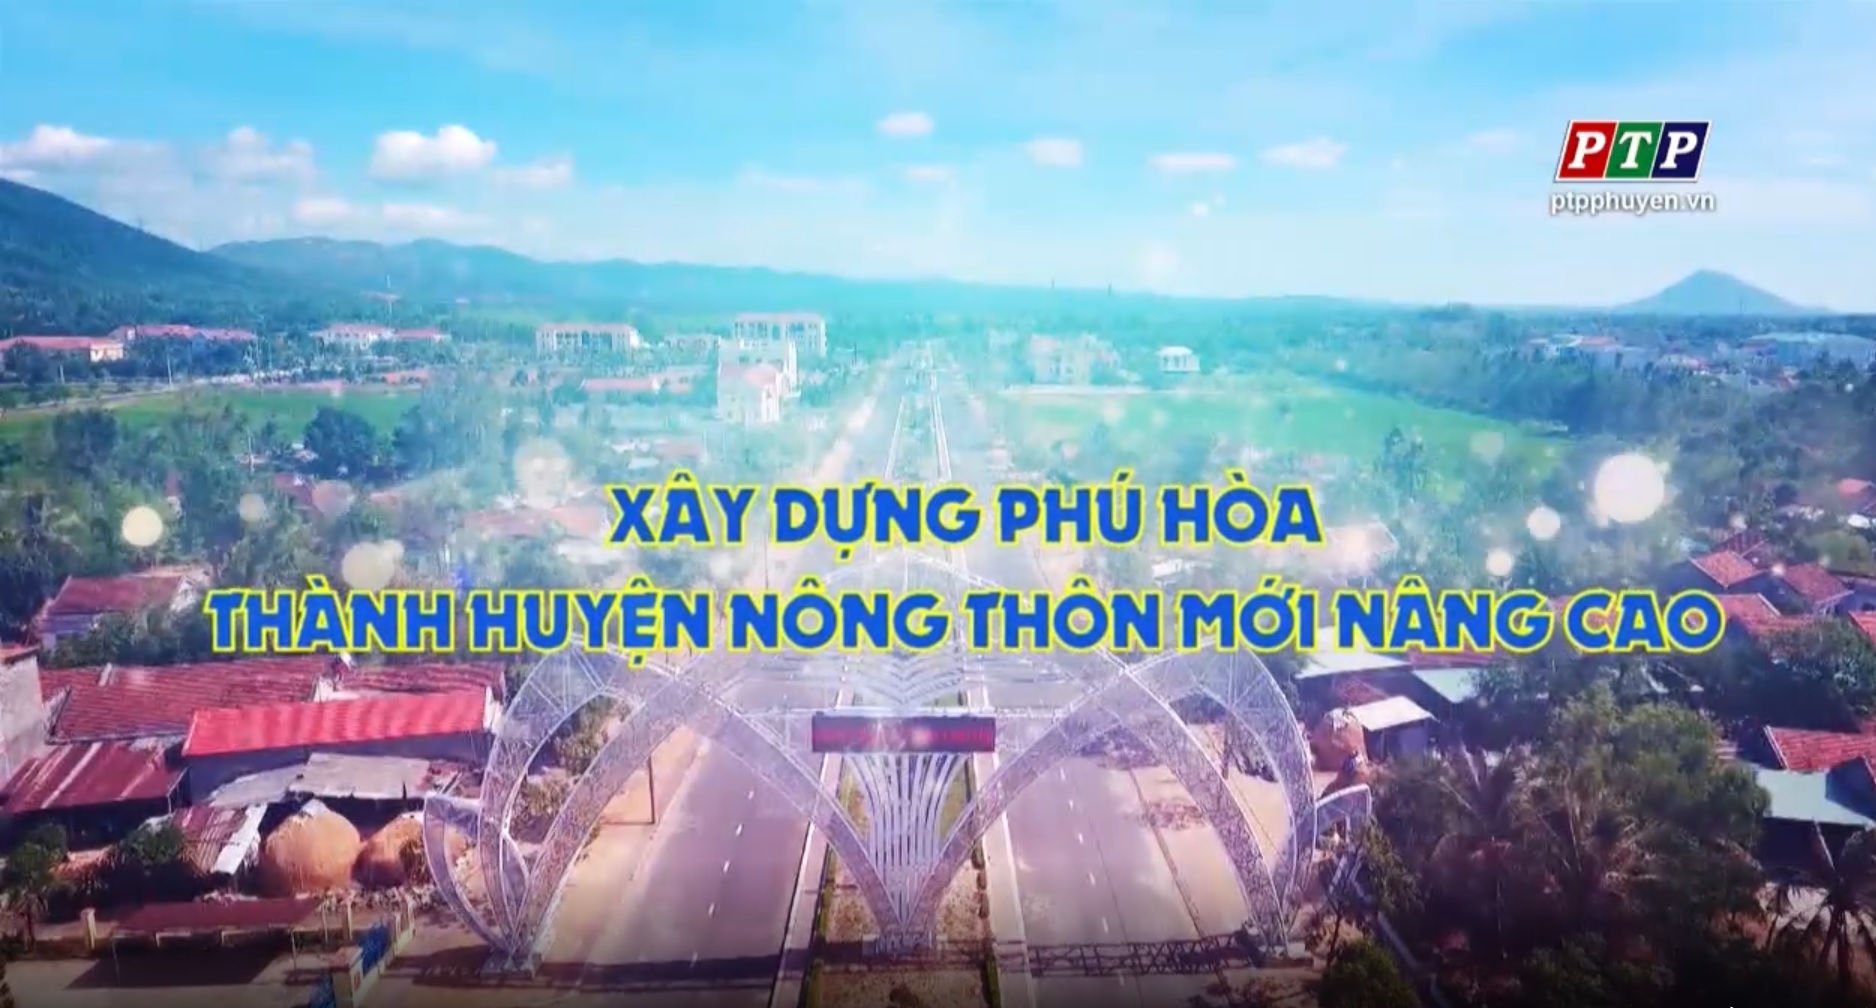 PS - Xây Dựng Phú Hoà Thành Huyện Nông Thôn Mới Nâng Cao